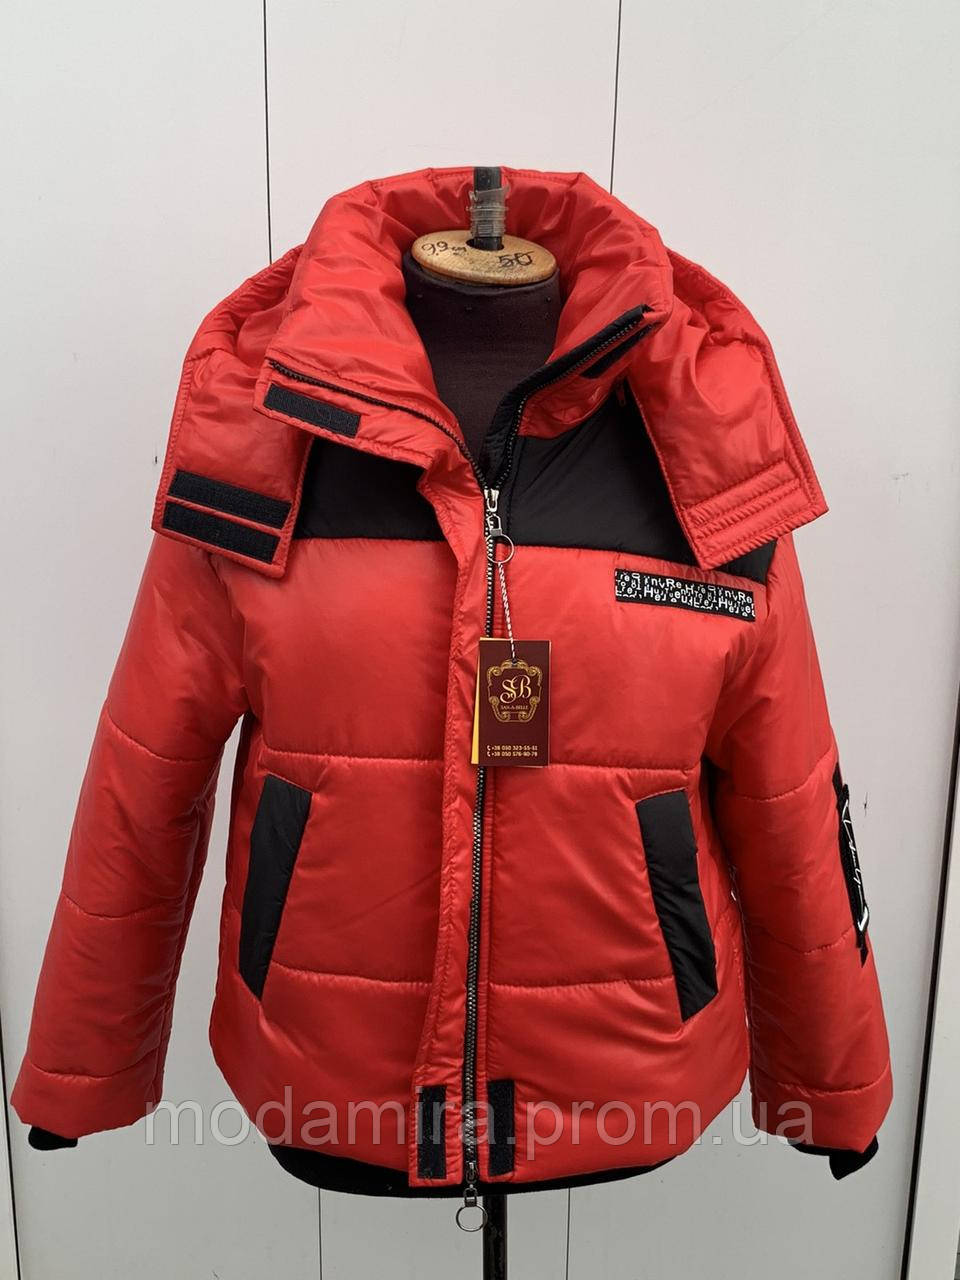 

Женская зимняя короткая куртка, модная, красивая новинка р- 42, 44, 46, 48, 50, 52, 54, 56 красная, Красный